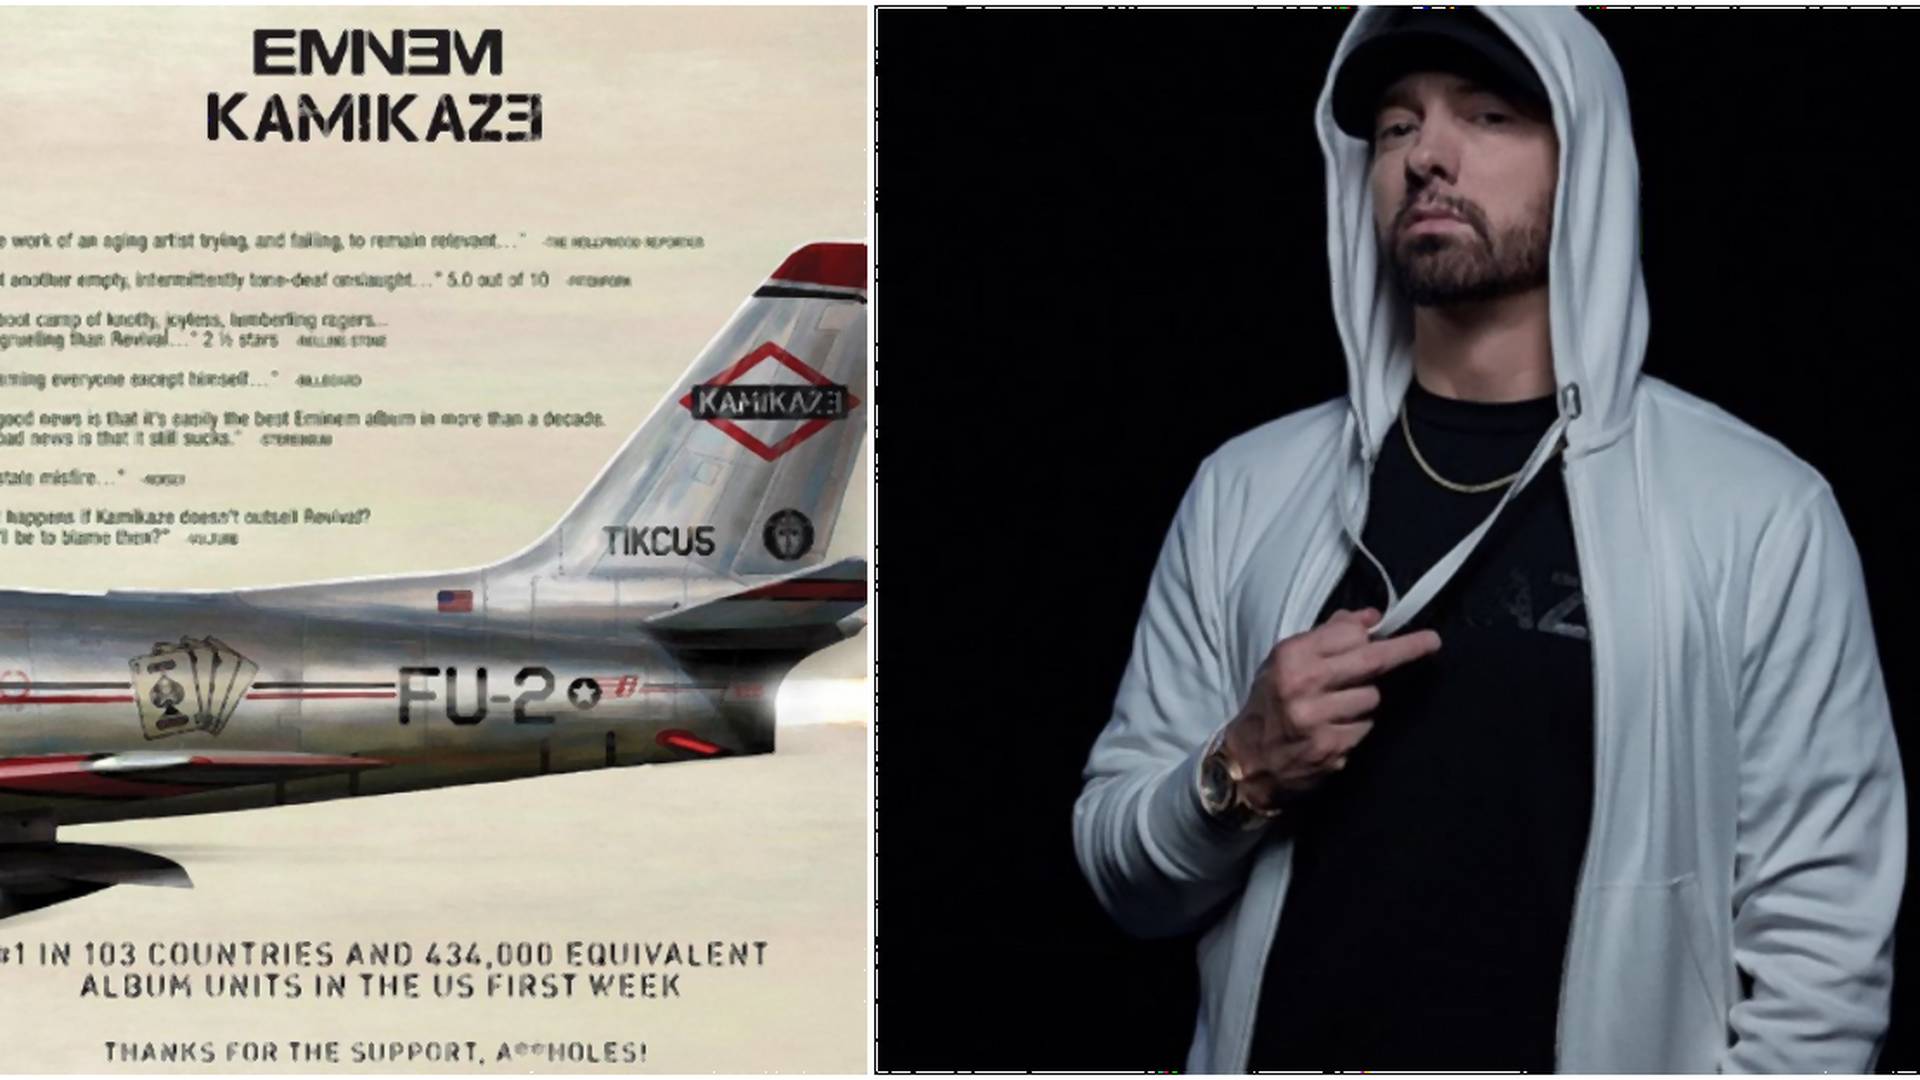 Aj zlá reklama je reklama. Eminem využil negatívne recenzie jeho albumu vo svoj prospech